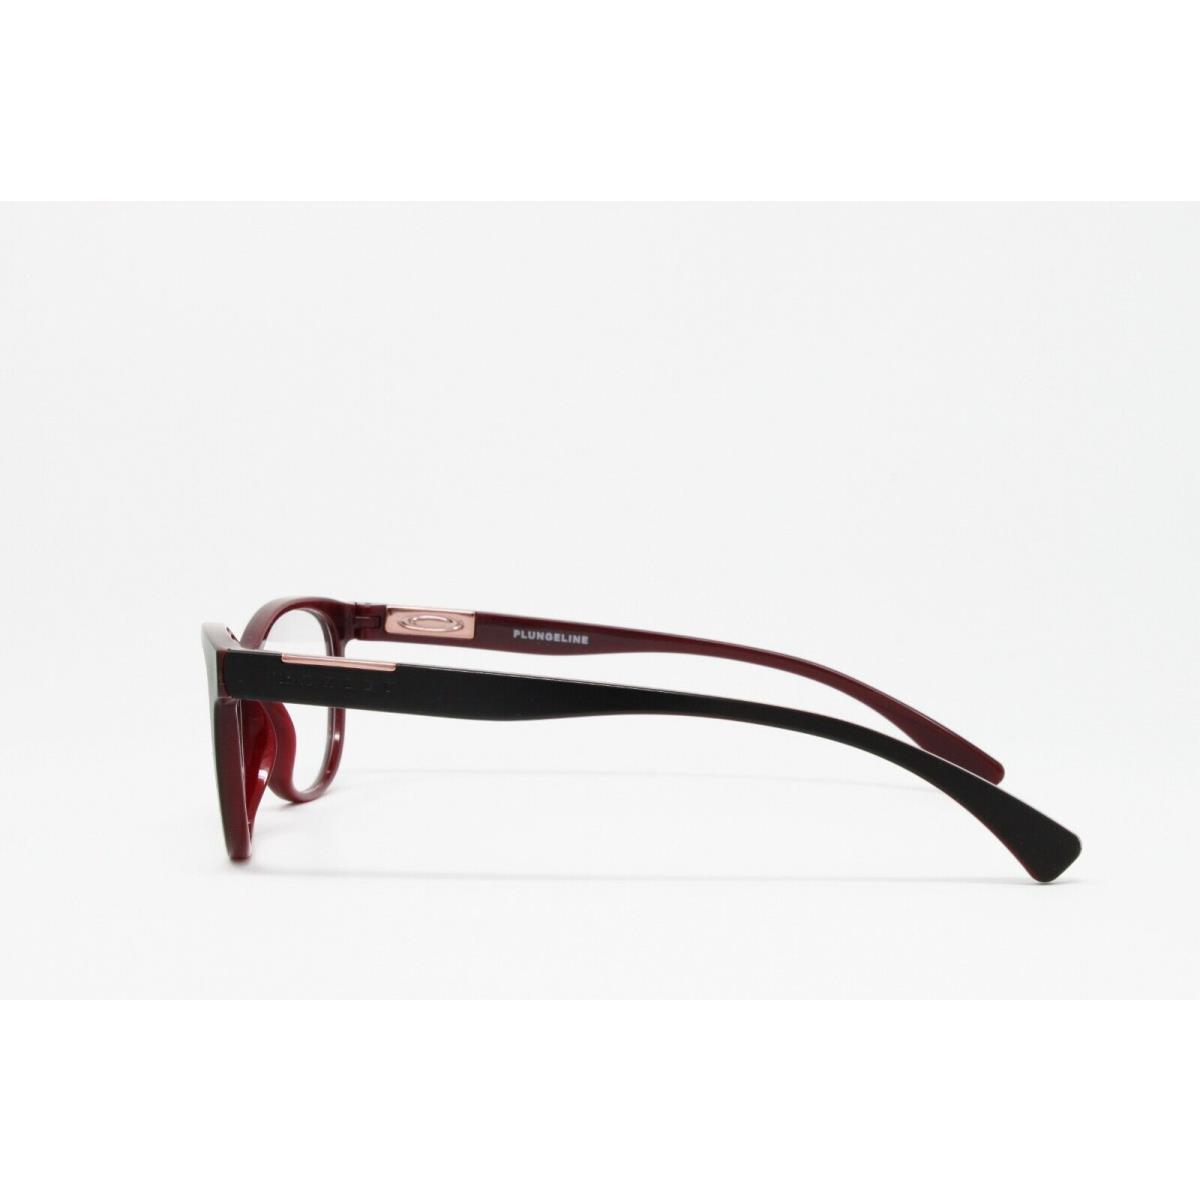 Oakley eyeglasses Optical Plungeline - Black Frame